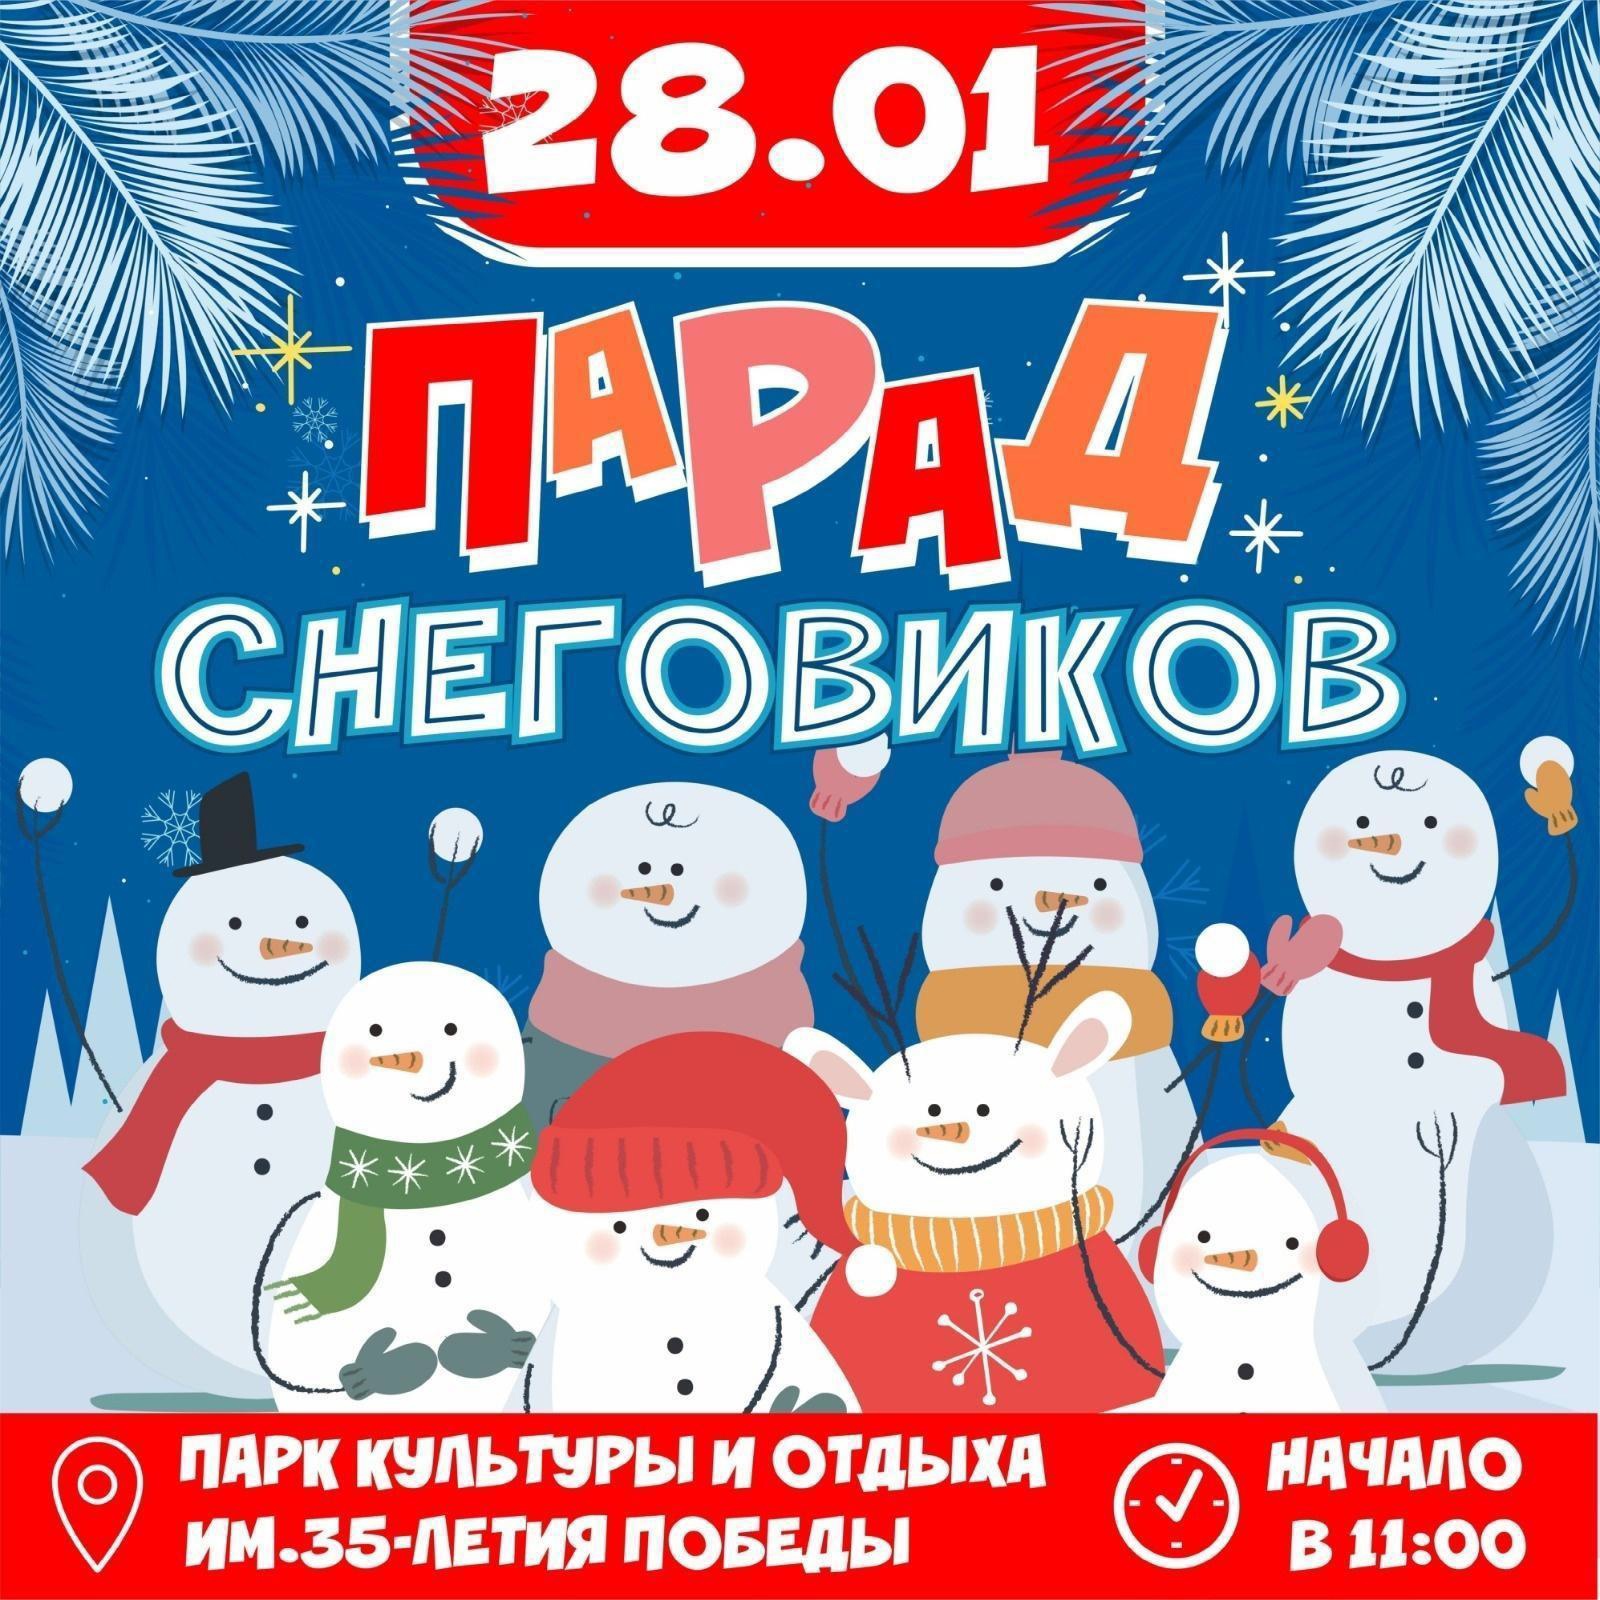 В Кинешме пройдет конкурс снежных фигур "Парад снеговиков"